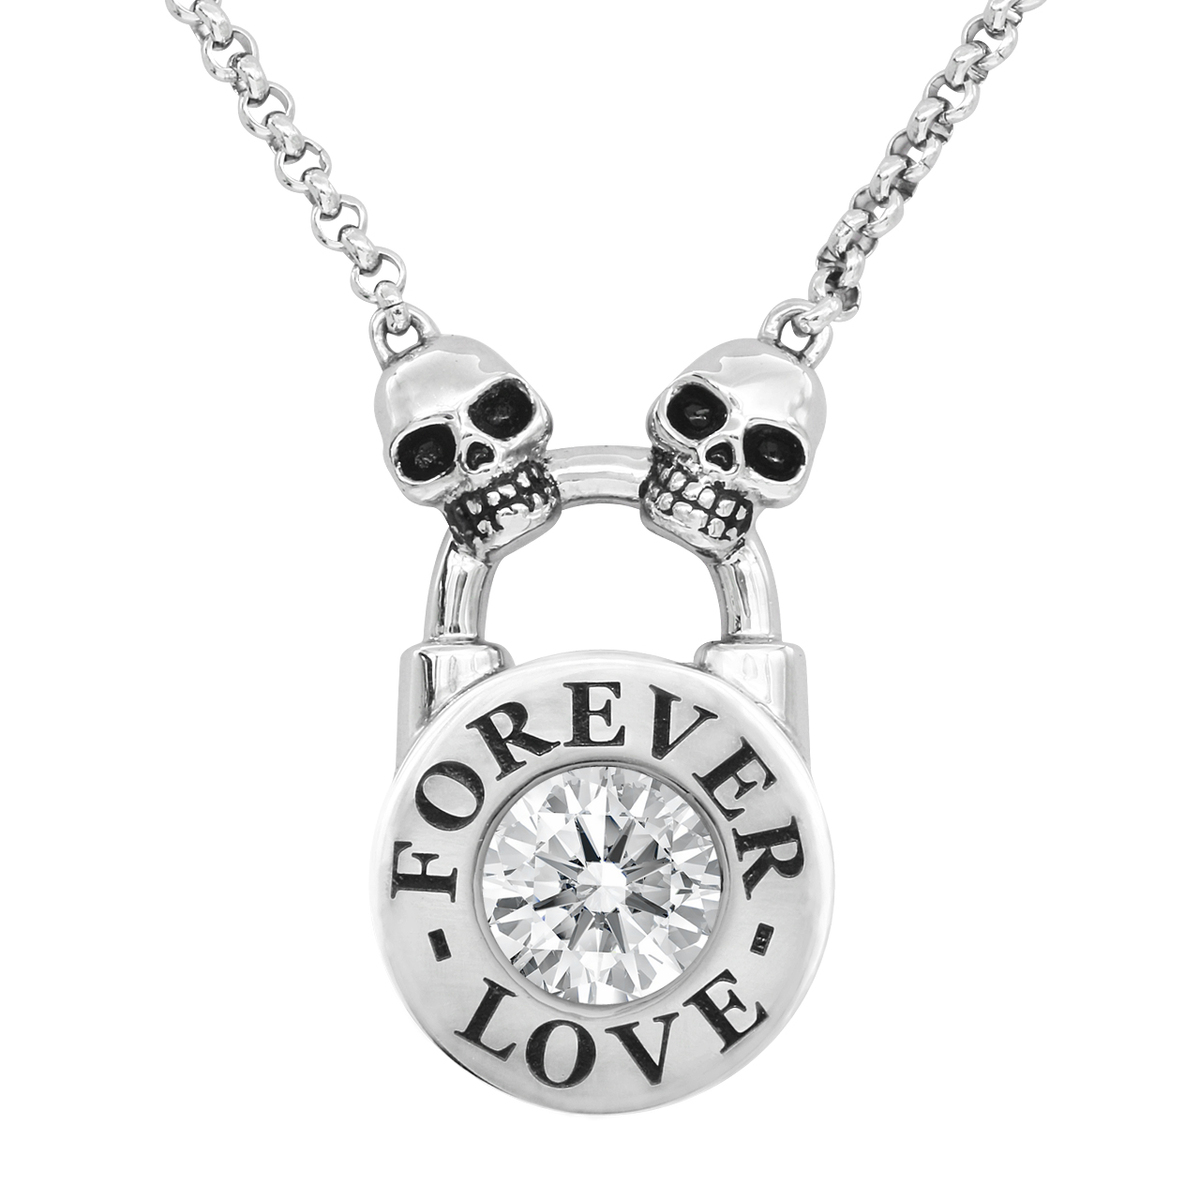 Skull Lock Necklace - Forever Love